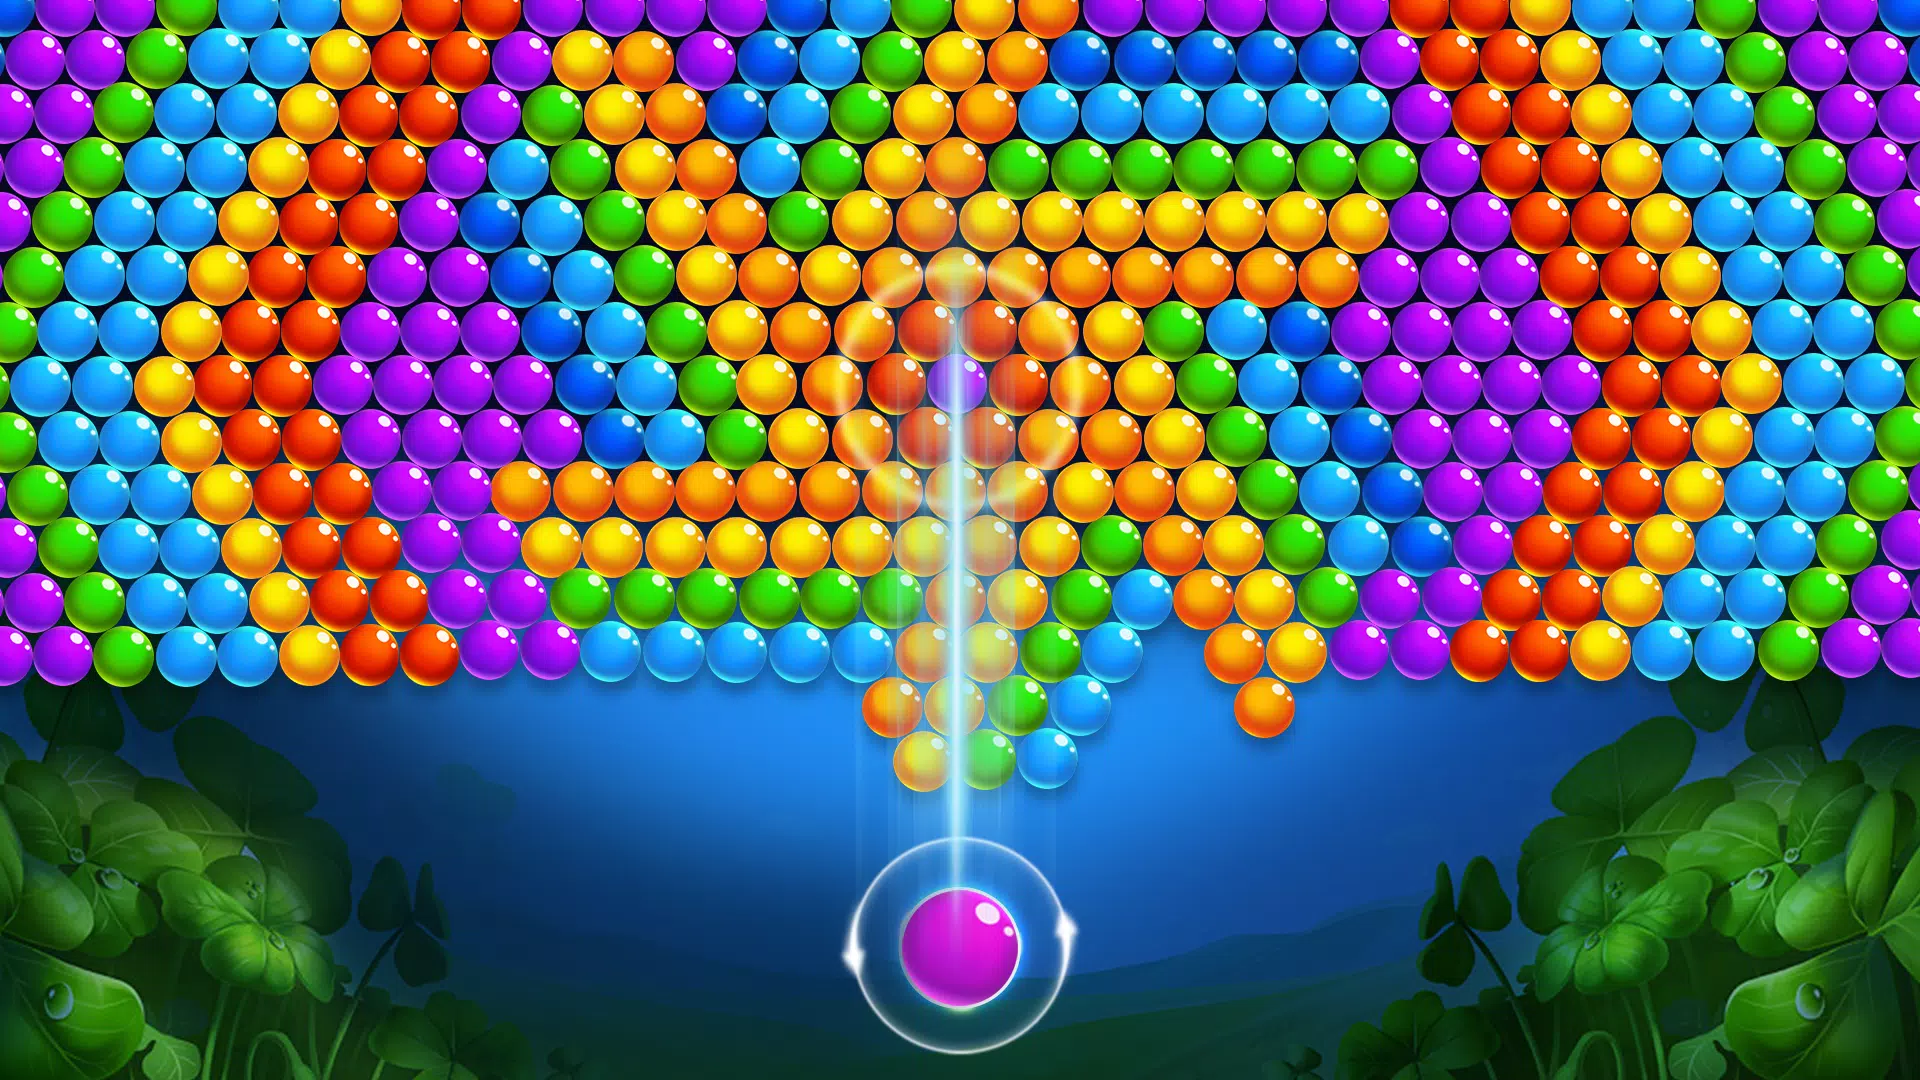 Faça o download do Jogos de bolhas para Android - Os melhores